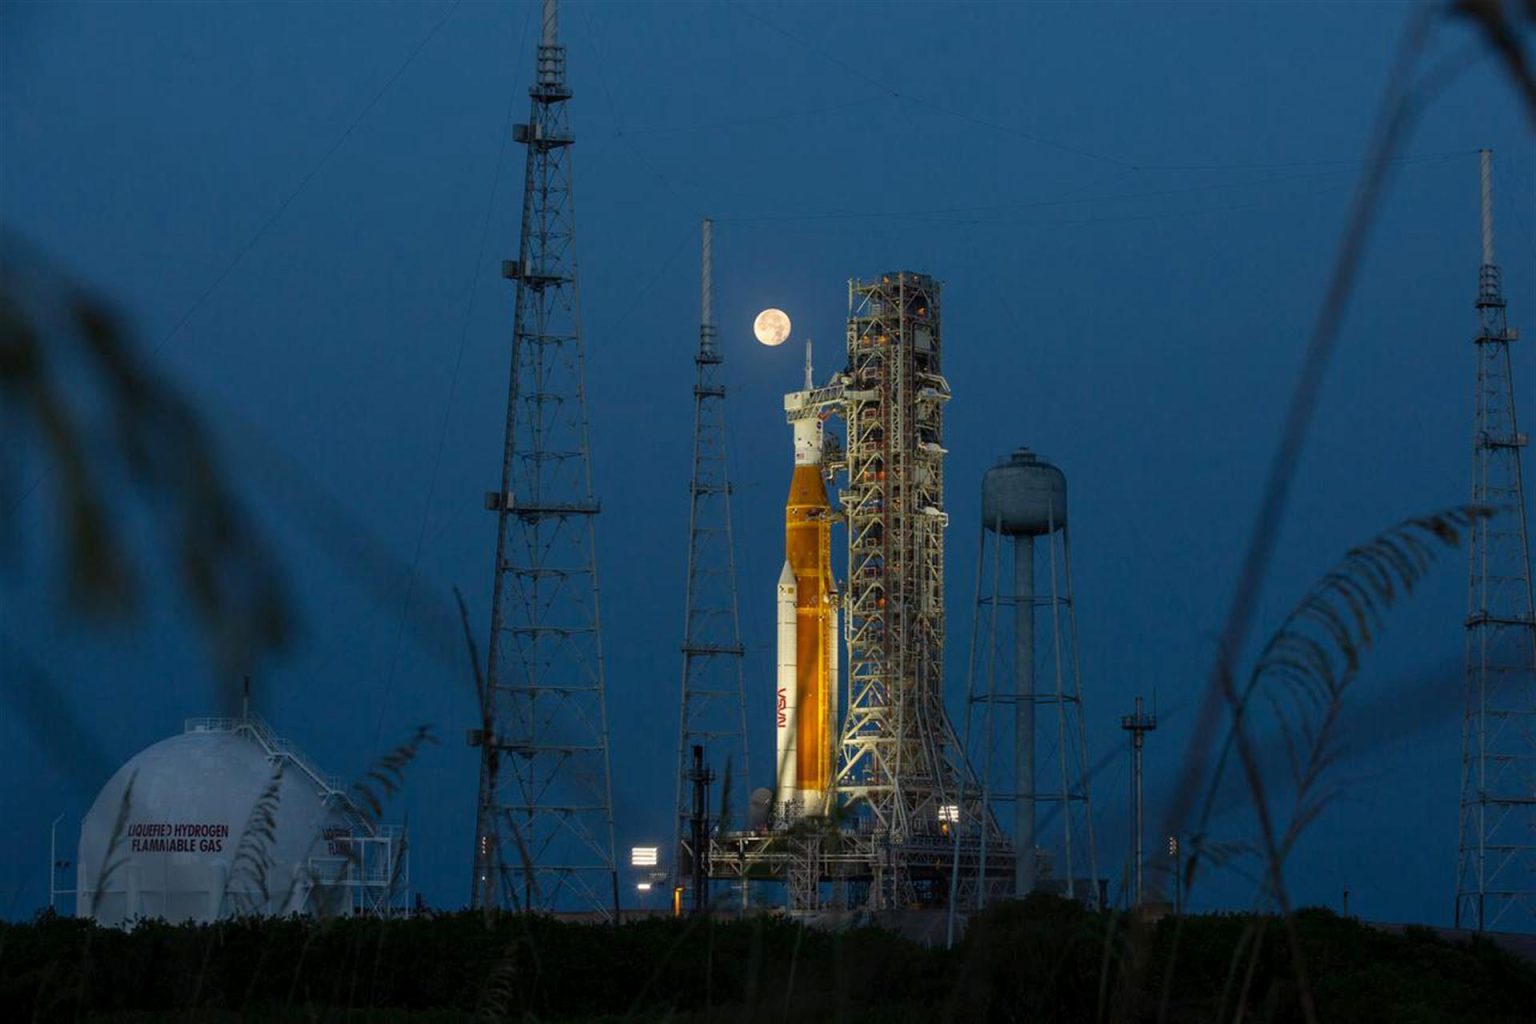 Fotografía del 14 de junio de 2022, cedida por la NASA, donde se aprecia la luna llena detrás del cohete del Sistema de lanzamiento espacial (SLS) Artemis I que lleva en lo alto la nave espacial Orion, en el Complejo de Lanzamiento 39B del Centro Espacial Kennedy, en Merritt Island, Florida (EE.UU.). EFE/ NASA/ SÓLO USO EDITORIAL/SÓLO DISPONIBLE PARA ILUSTRAR LA NOTICIA QUE ACOMPAÑA (CRÉDITO OBLIGATORIO)